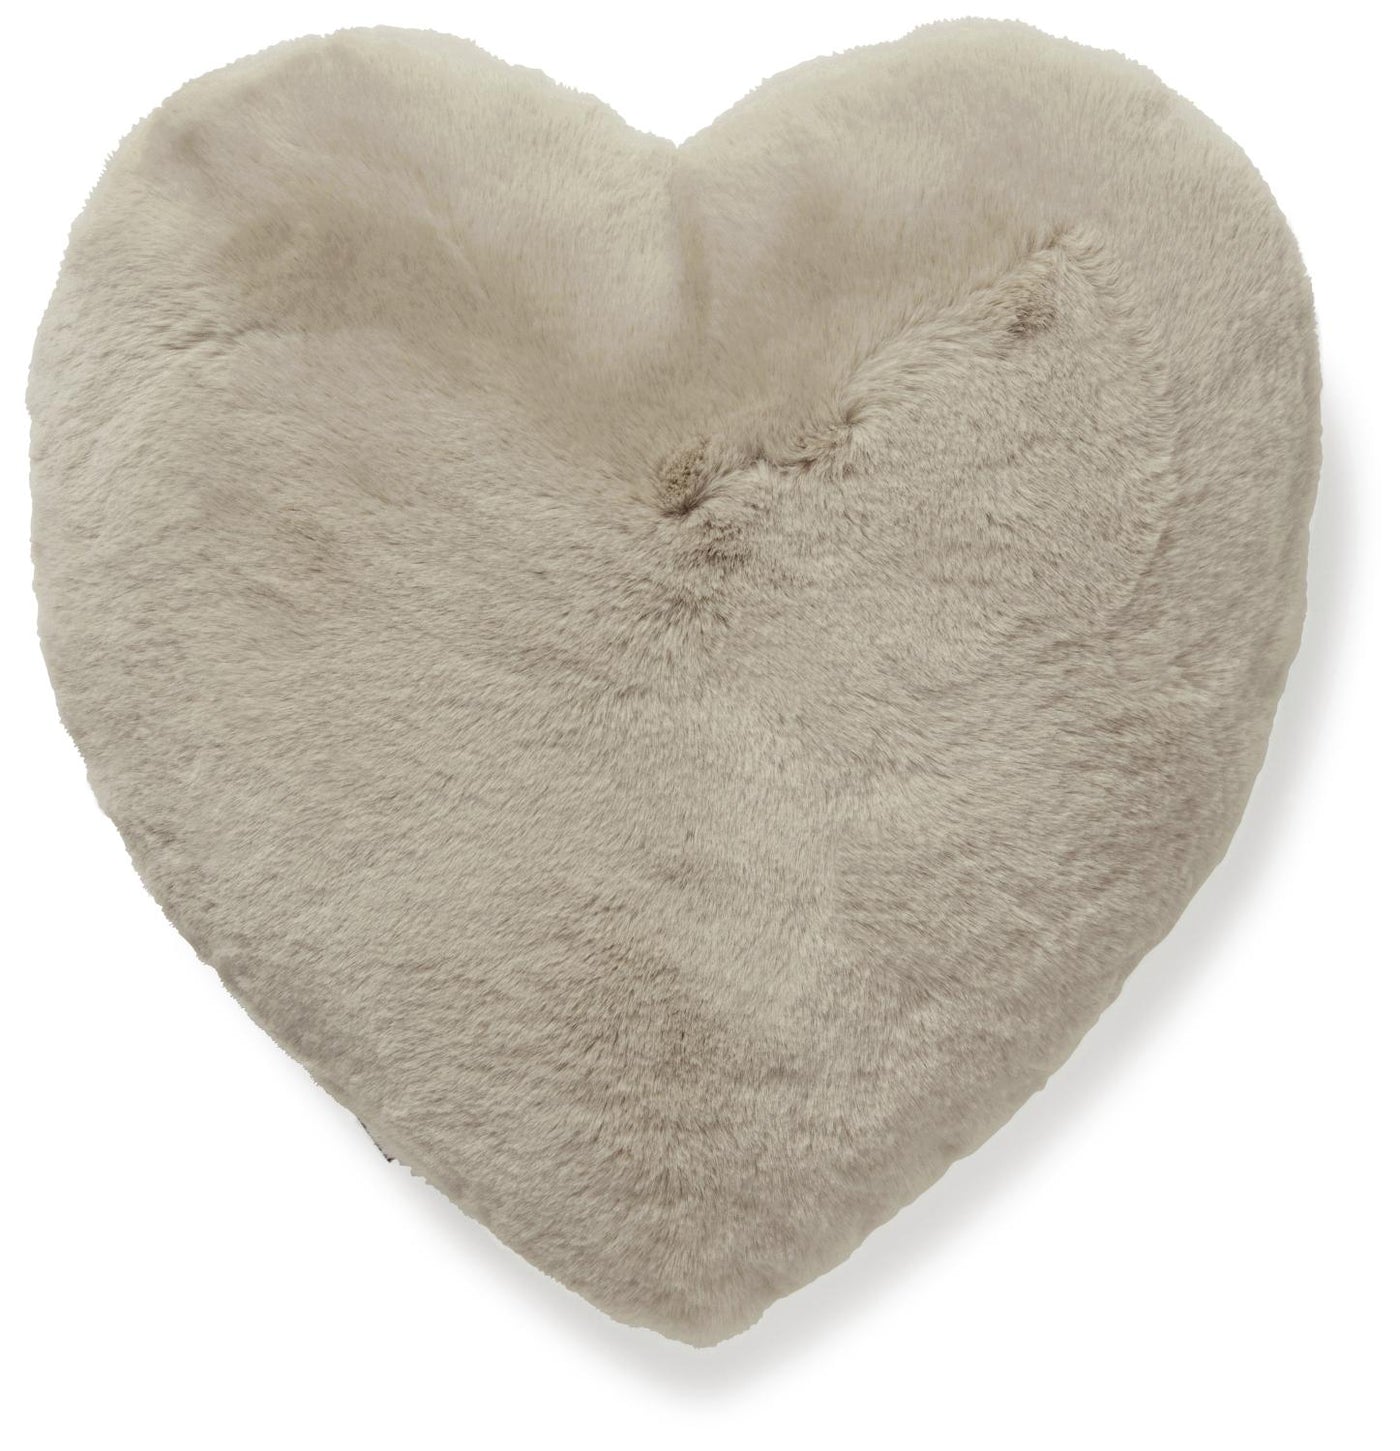 Skinnwille Super weiches Webpelz Herz-Kissen in beige, taube, grau oder weiß/ivory